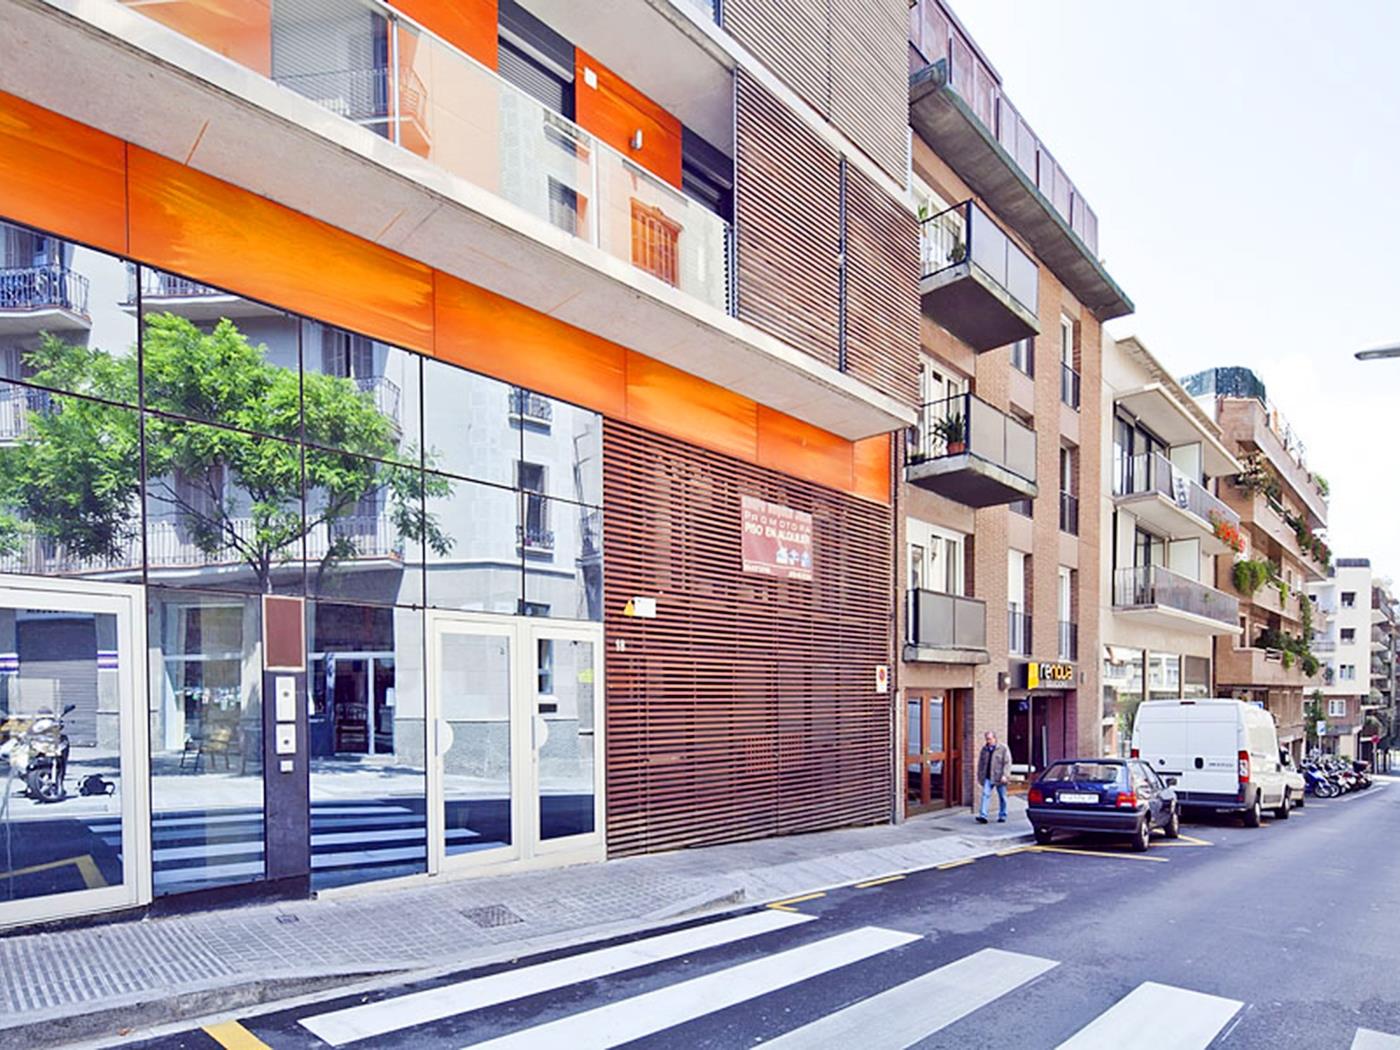 Location d'appartements d'entreprises à Barcelone pour 6 - My Space barcelona Appartements